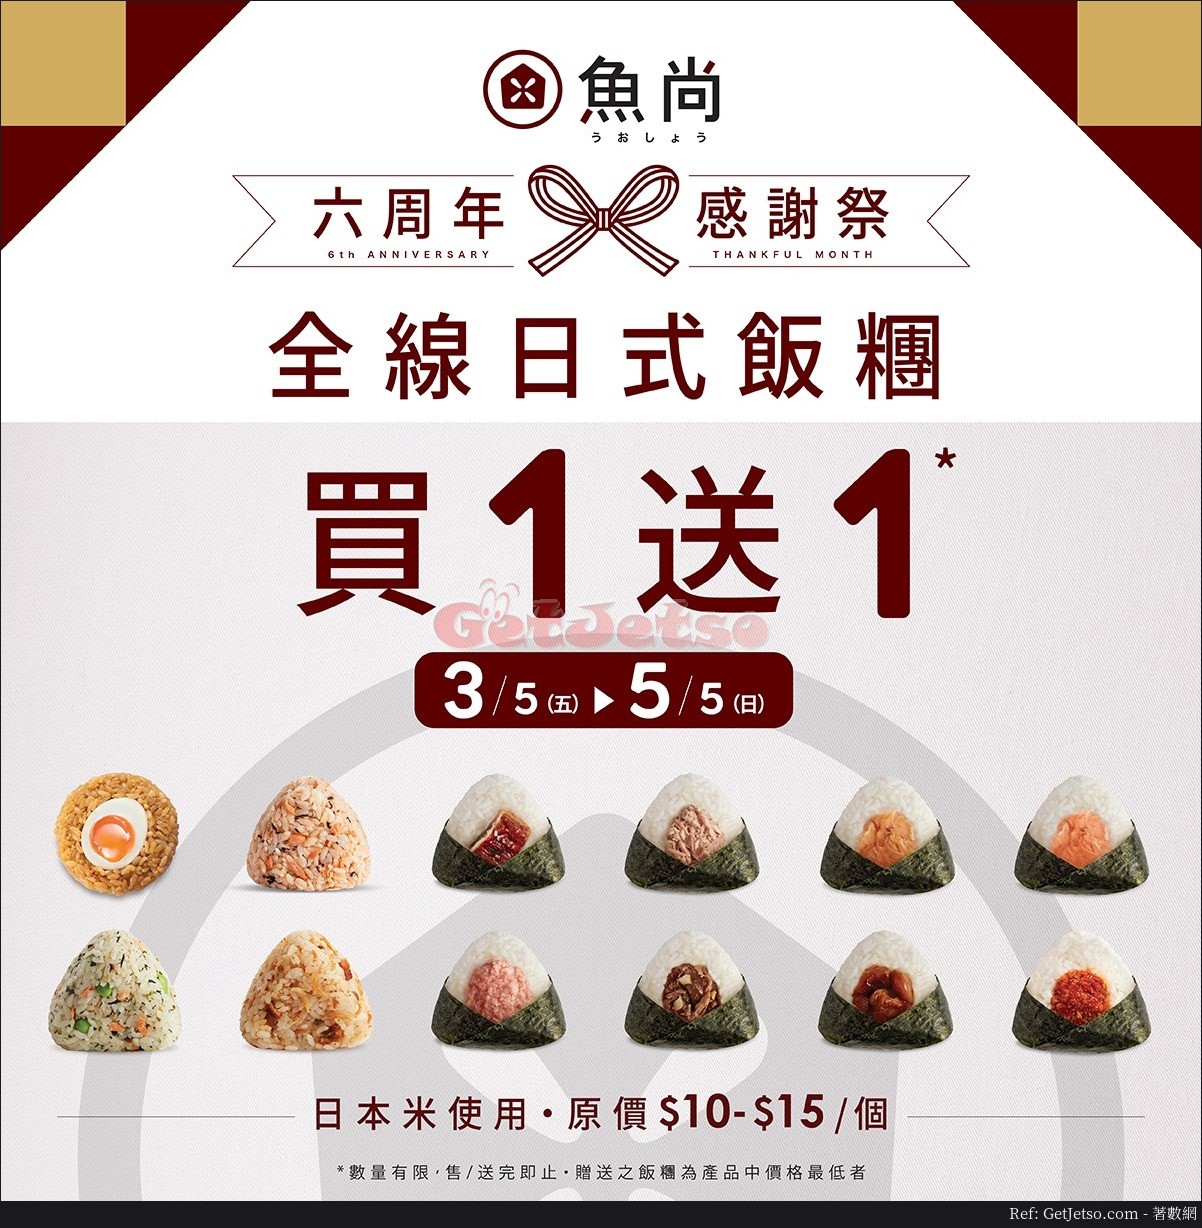 魚尚壽司所有日式飯糰買1送1優惠(至19年5月5日)圖片1